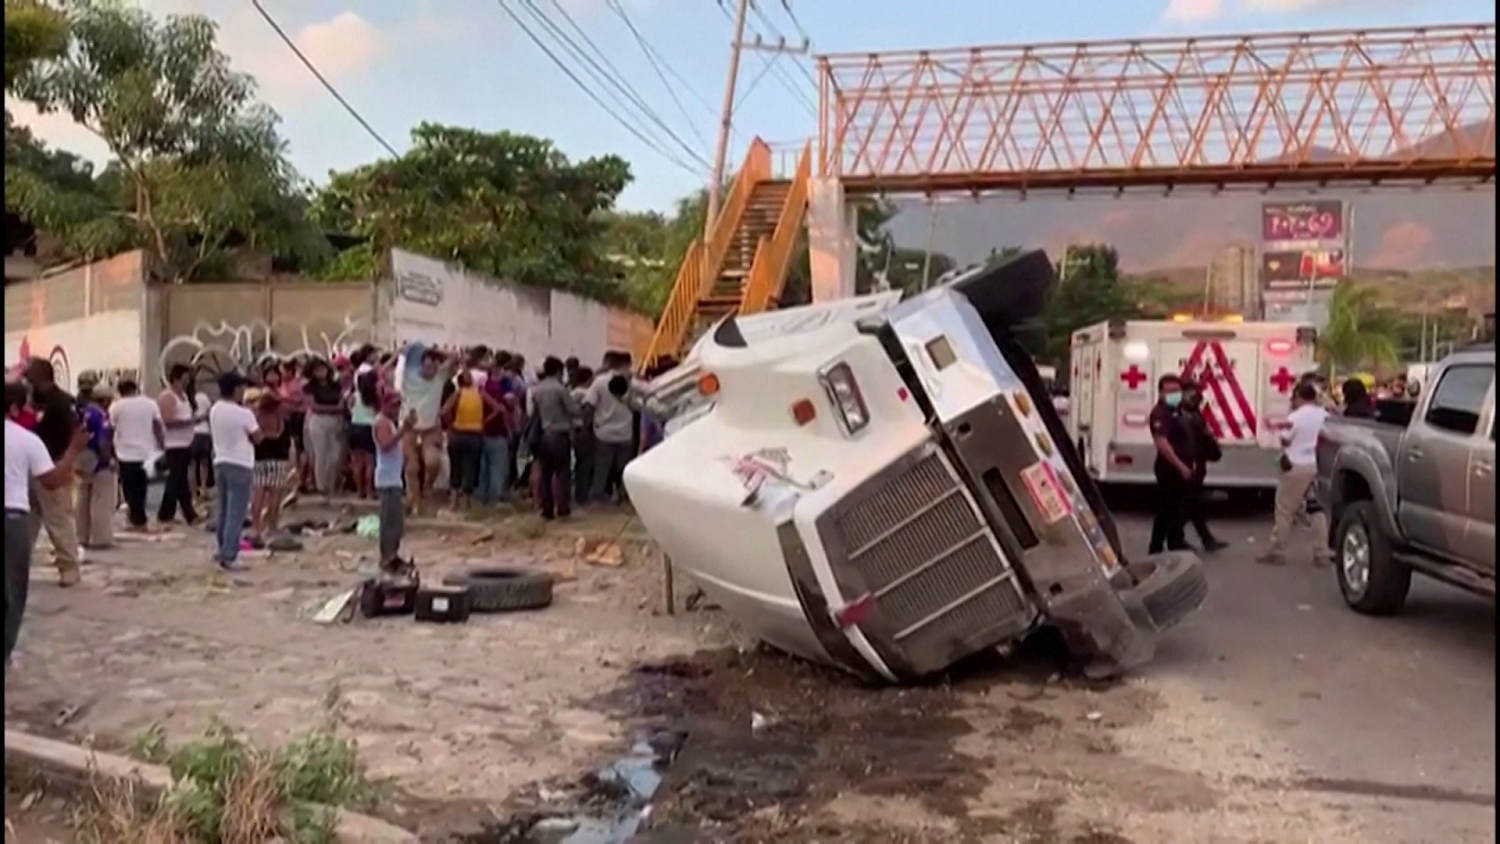 itsokay #itsok #crash #car #accident #mexicancarcrash #mexican